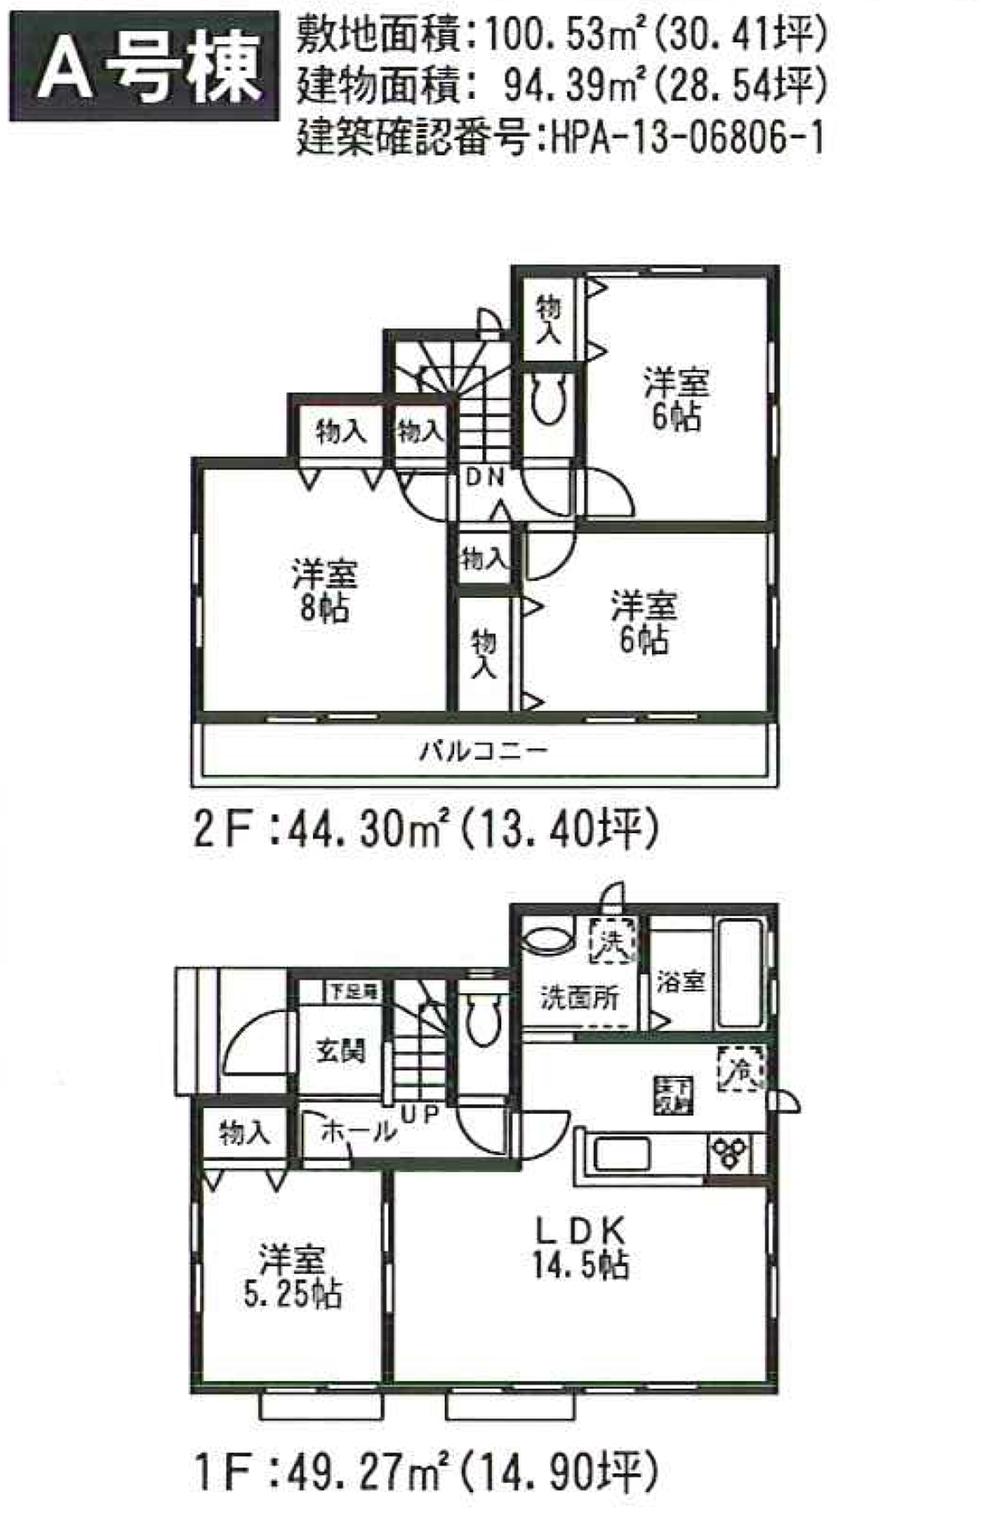 Floor plan. (A Building), Price 36,300,000 yen, 4LDK, Land area 100.53 sq m , Building area 94.39 sq m